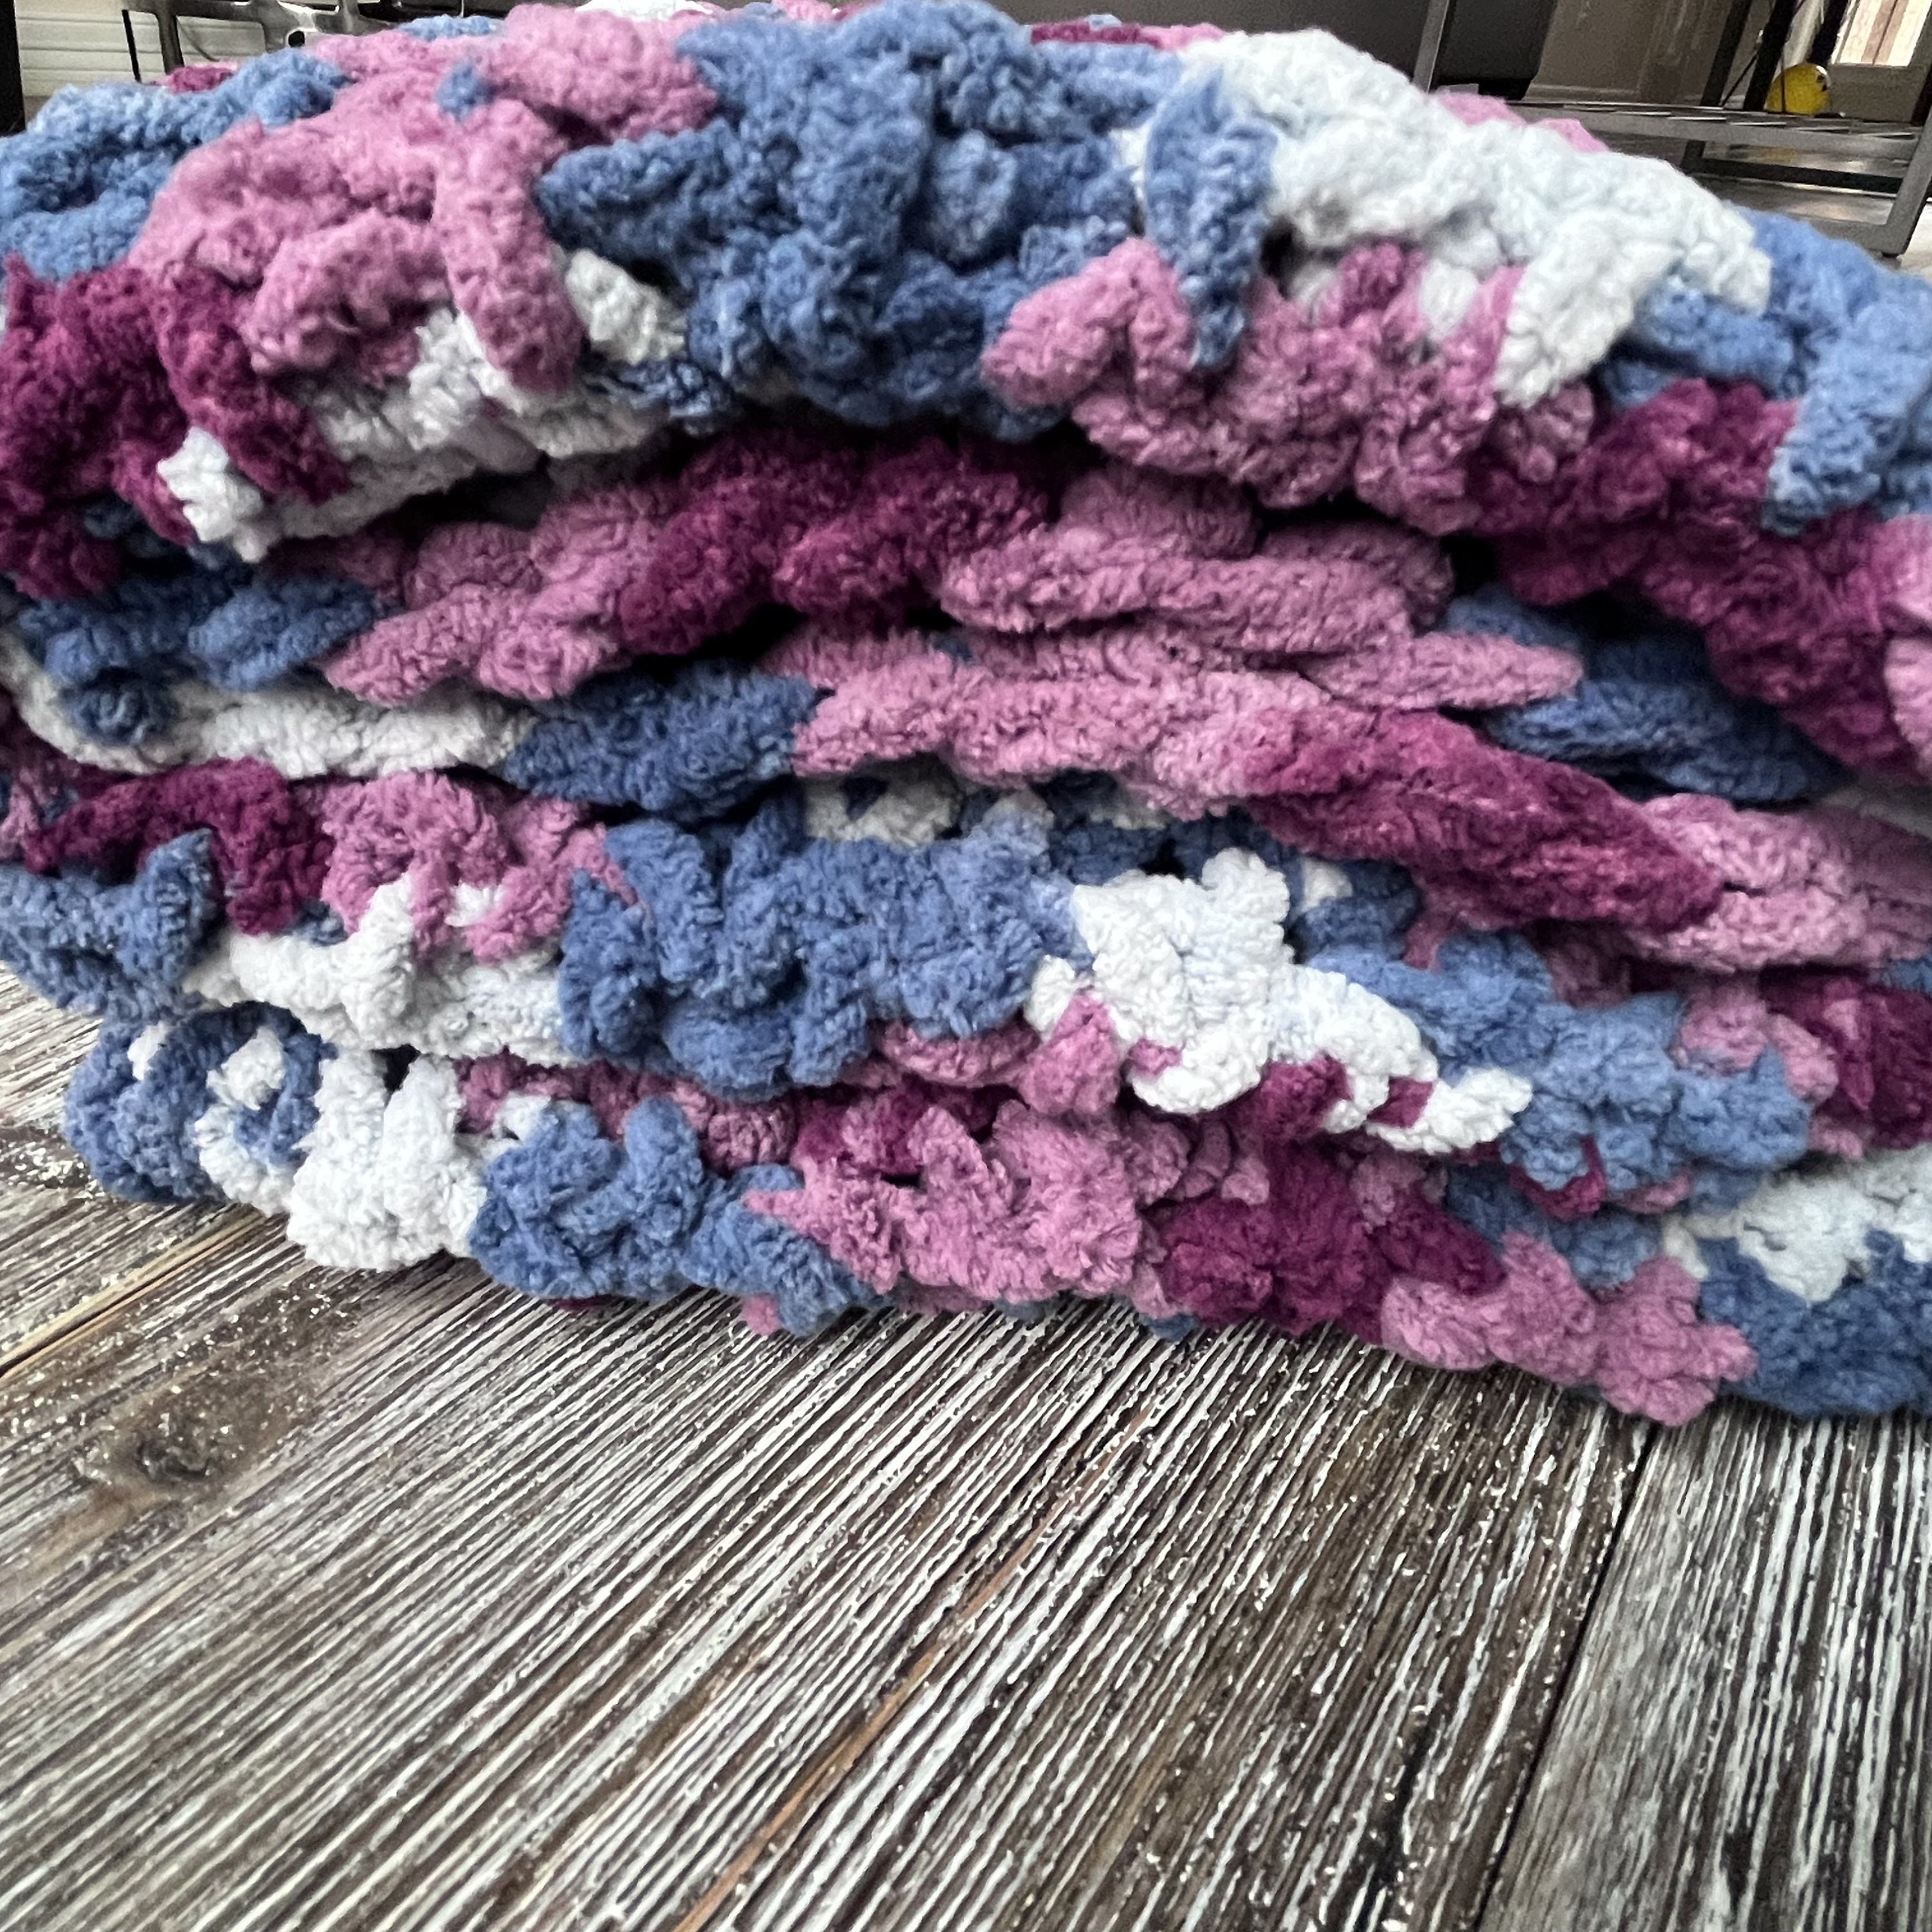 Handmade Crochet Baby Blanket for Boy Blue, Brown, White 